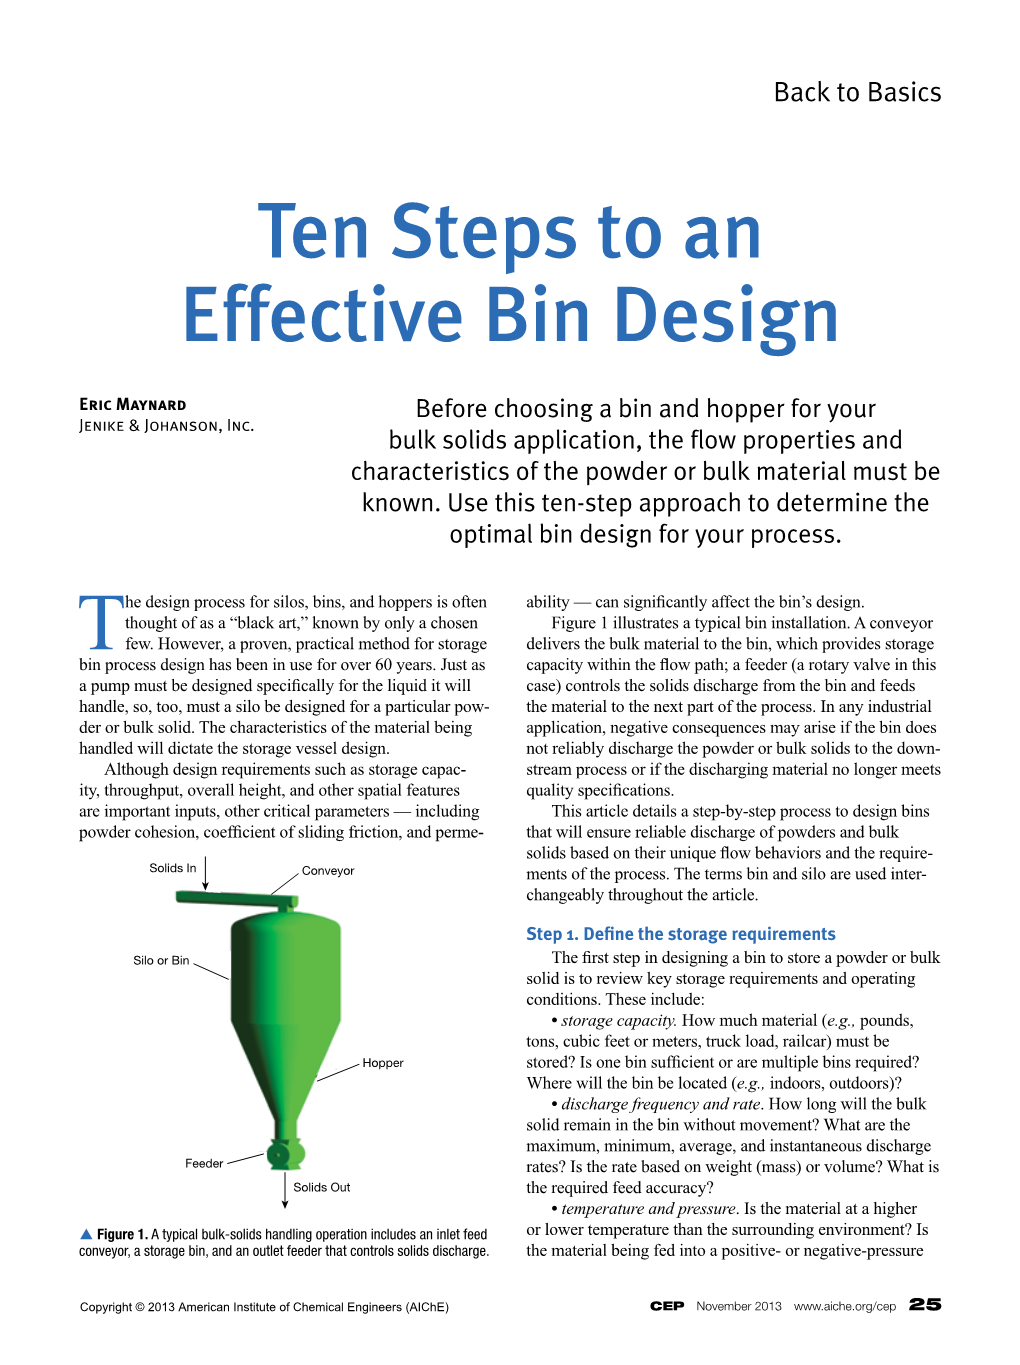 Ten Steps to an Effective Bin Design